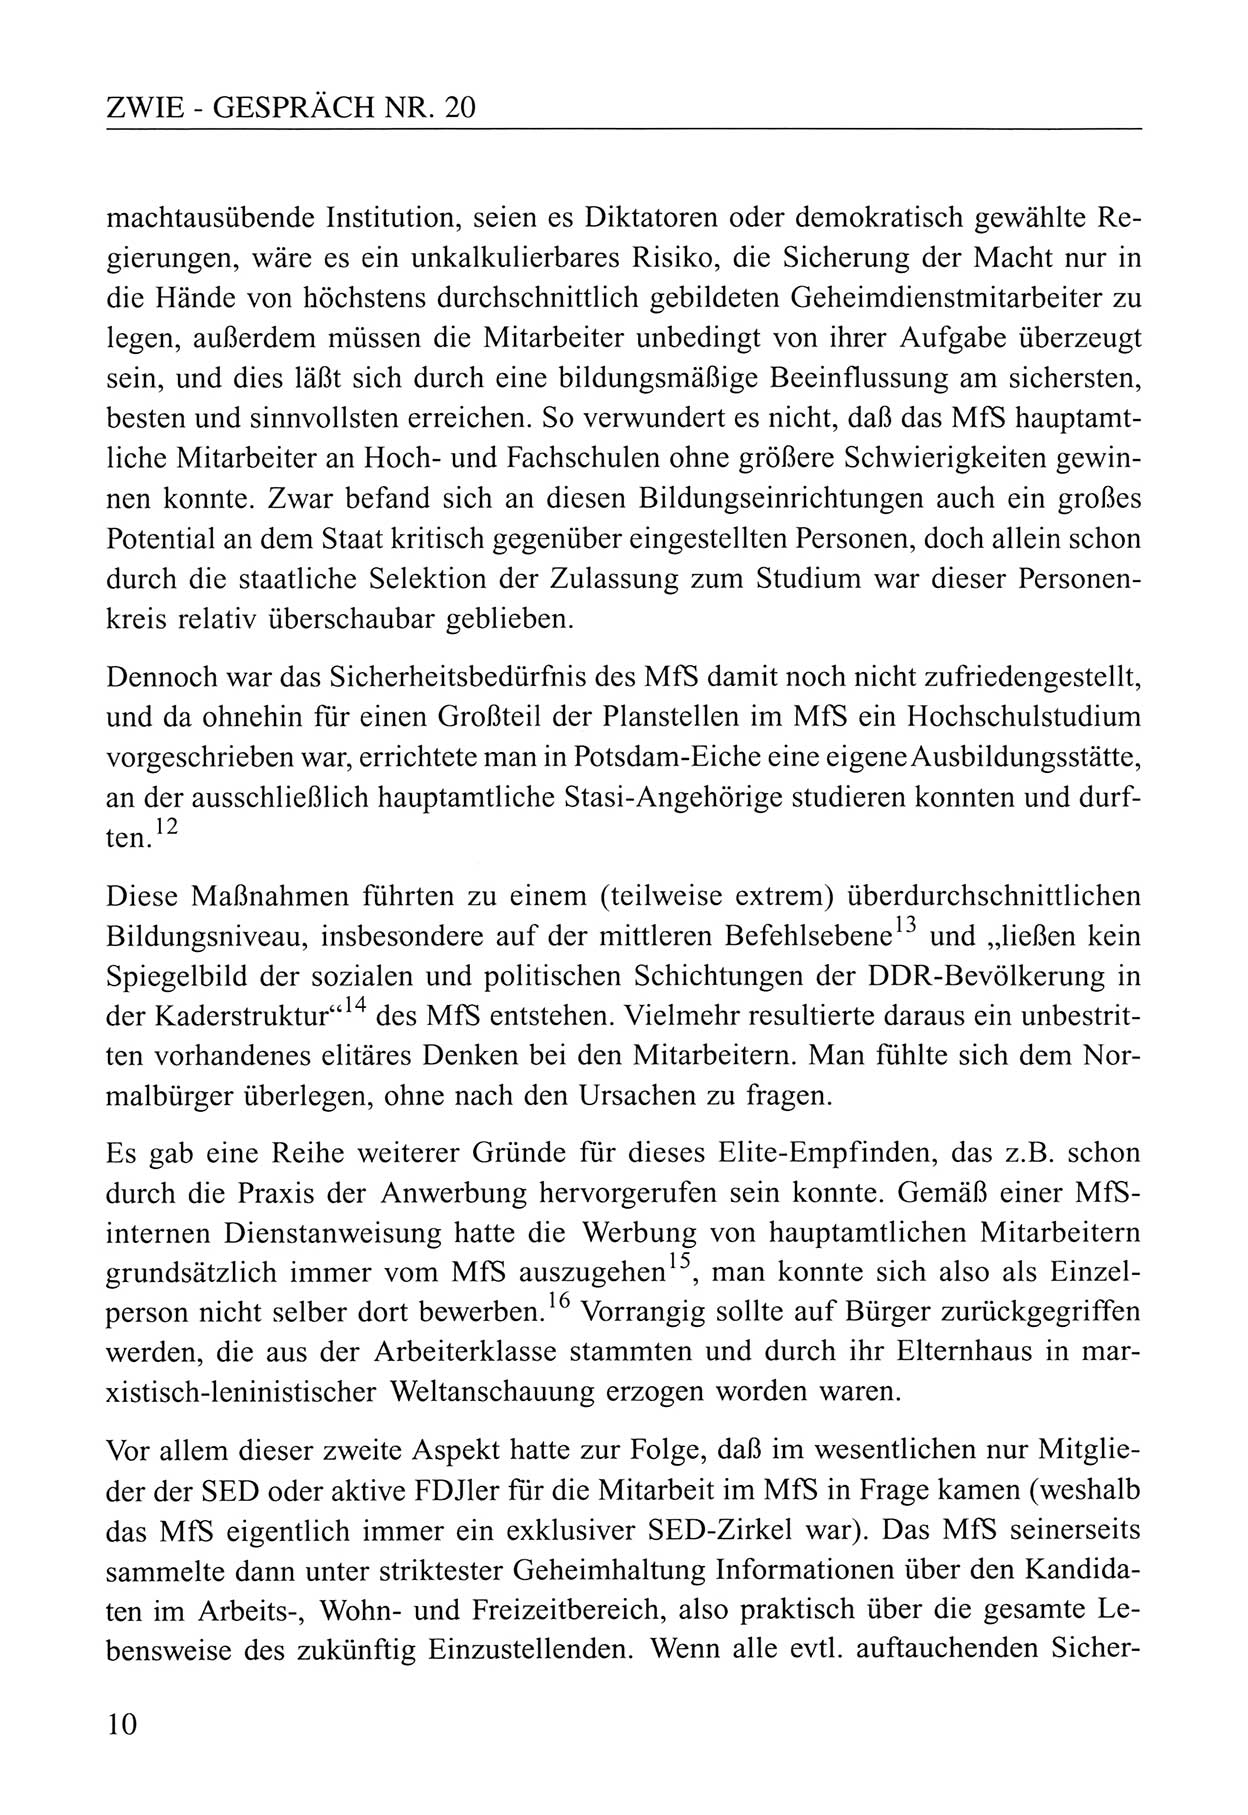 Zwie-Gespräch, Beiträge zum Umgang mit der Staatssicherheits-Vergangenheit [Deutsche Demokratische Republik (DDR)], Ausgabe Nr. 20, Berlin 1994, Seite 10 (Zwie-Gespr. Ausg. 20 1994, S. 10)